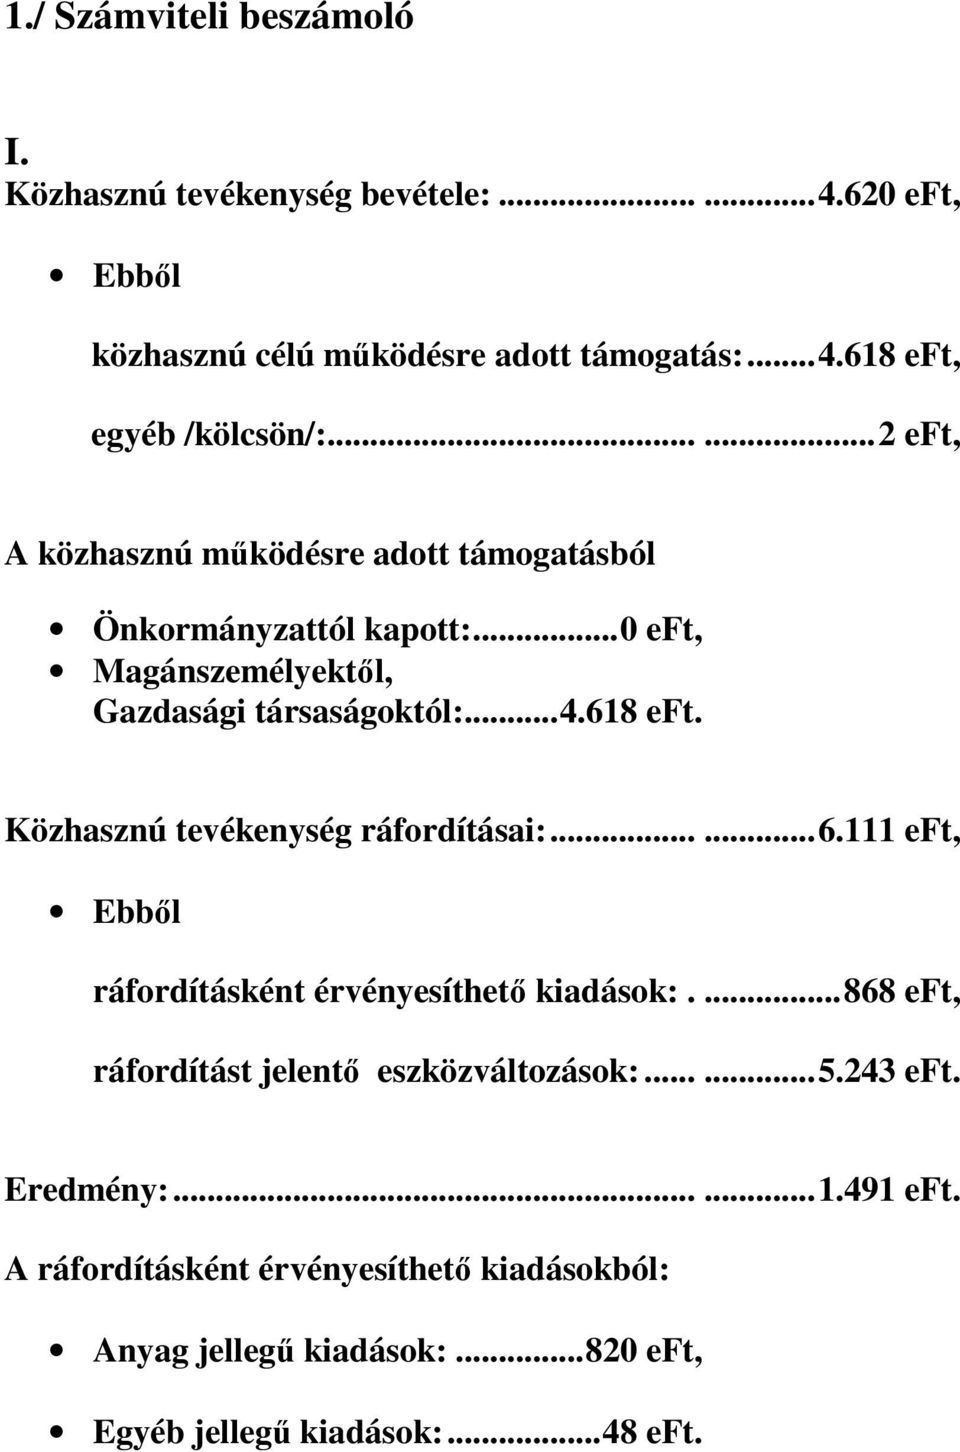 Közhasznú tevékenység ráfordításai:......6.111 eft, Ebbıl ráfordításként érvényesíthetı kiadások:....868 eft, ráfordítást jelentı eszközváltozások:......5.